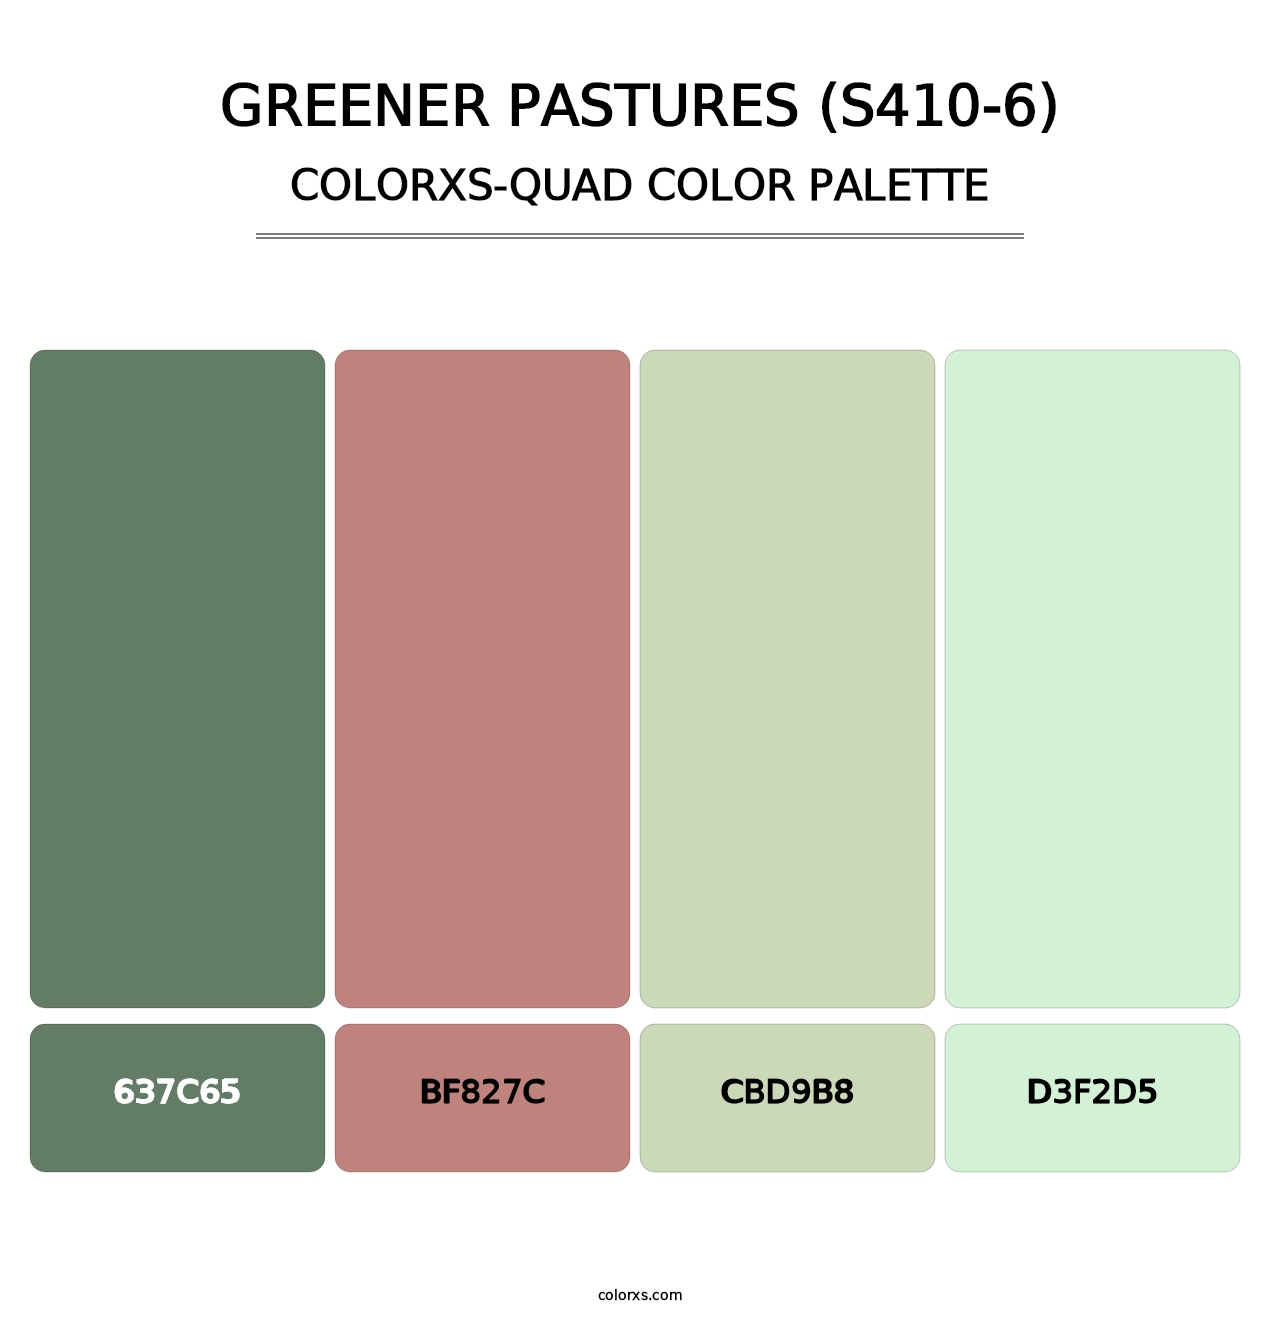 Greener Pastures (S410-6) - Colorxs Quad Palette